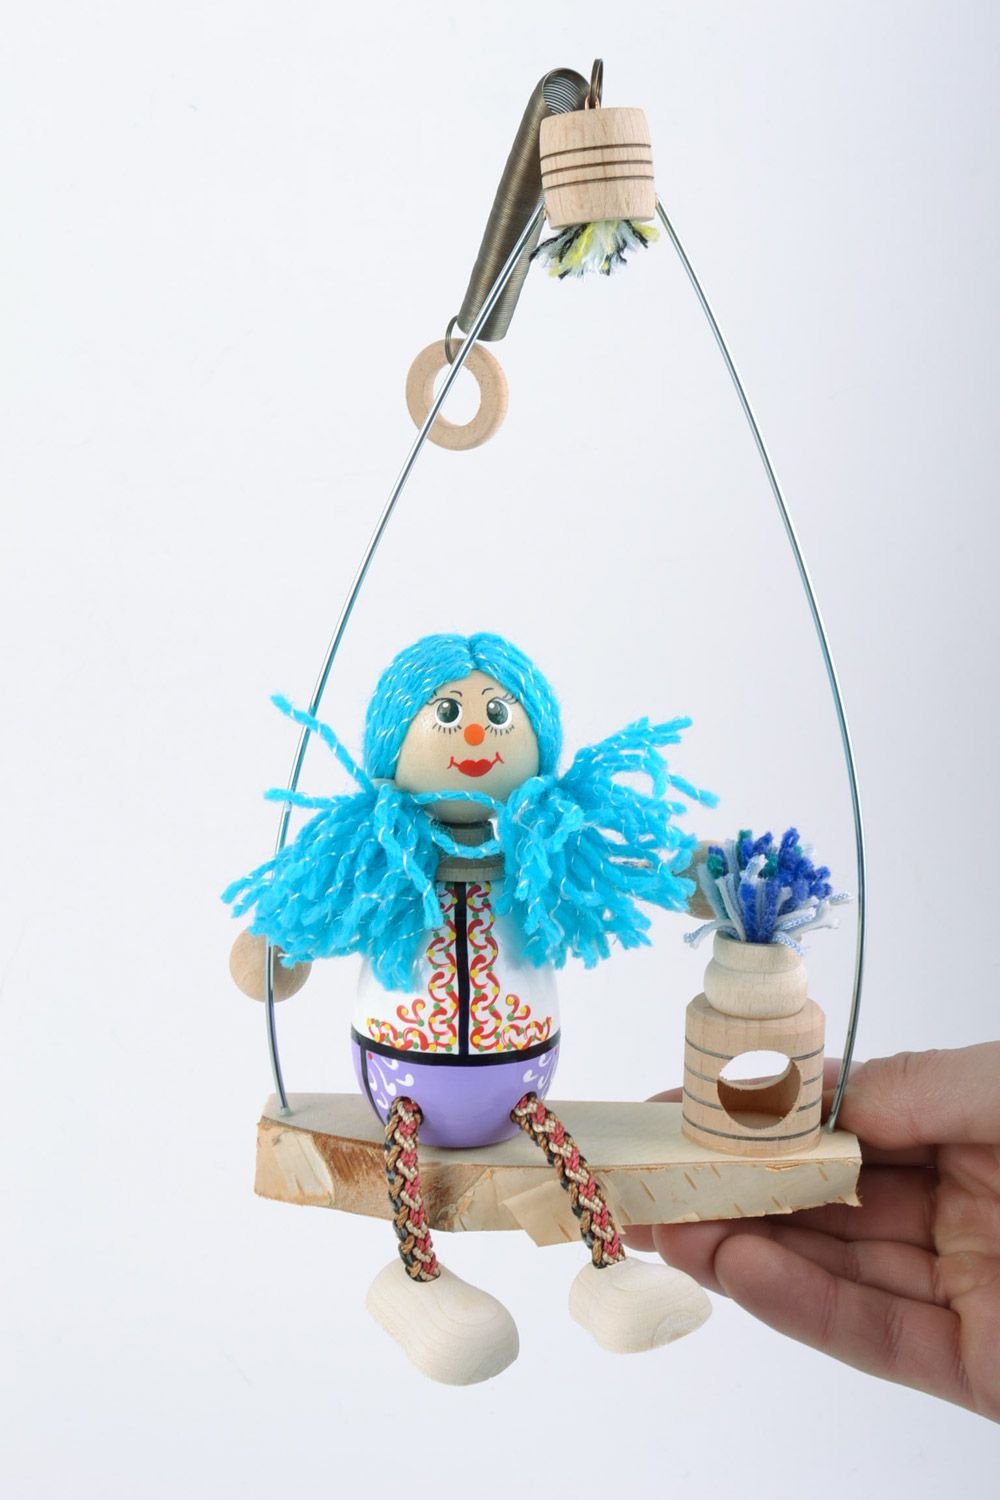 Holz Spielzeug Mädchen mit blauem Haar bemalt künstlerisch schön Handarbeit toll foto 1